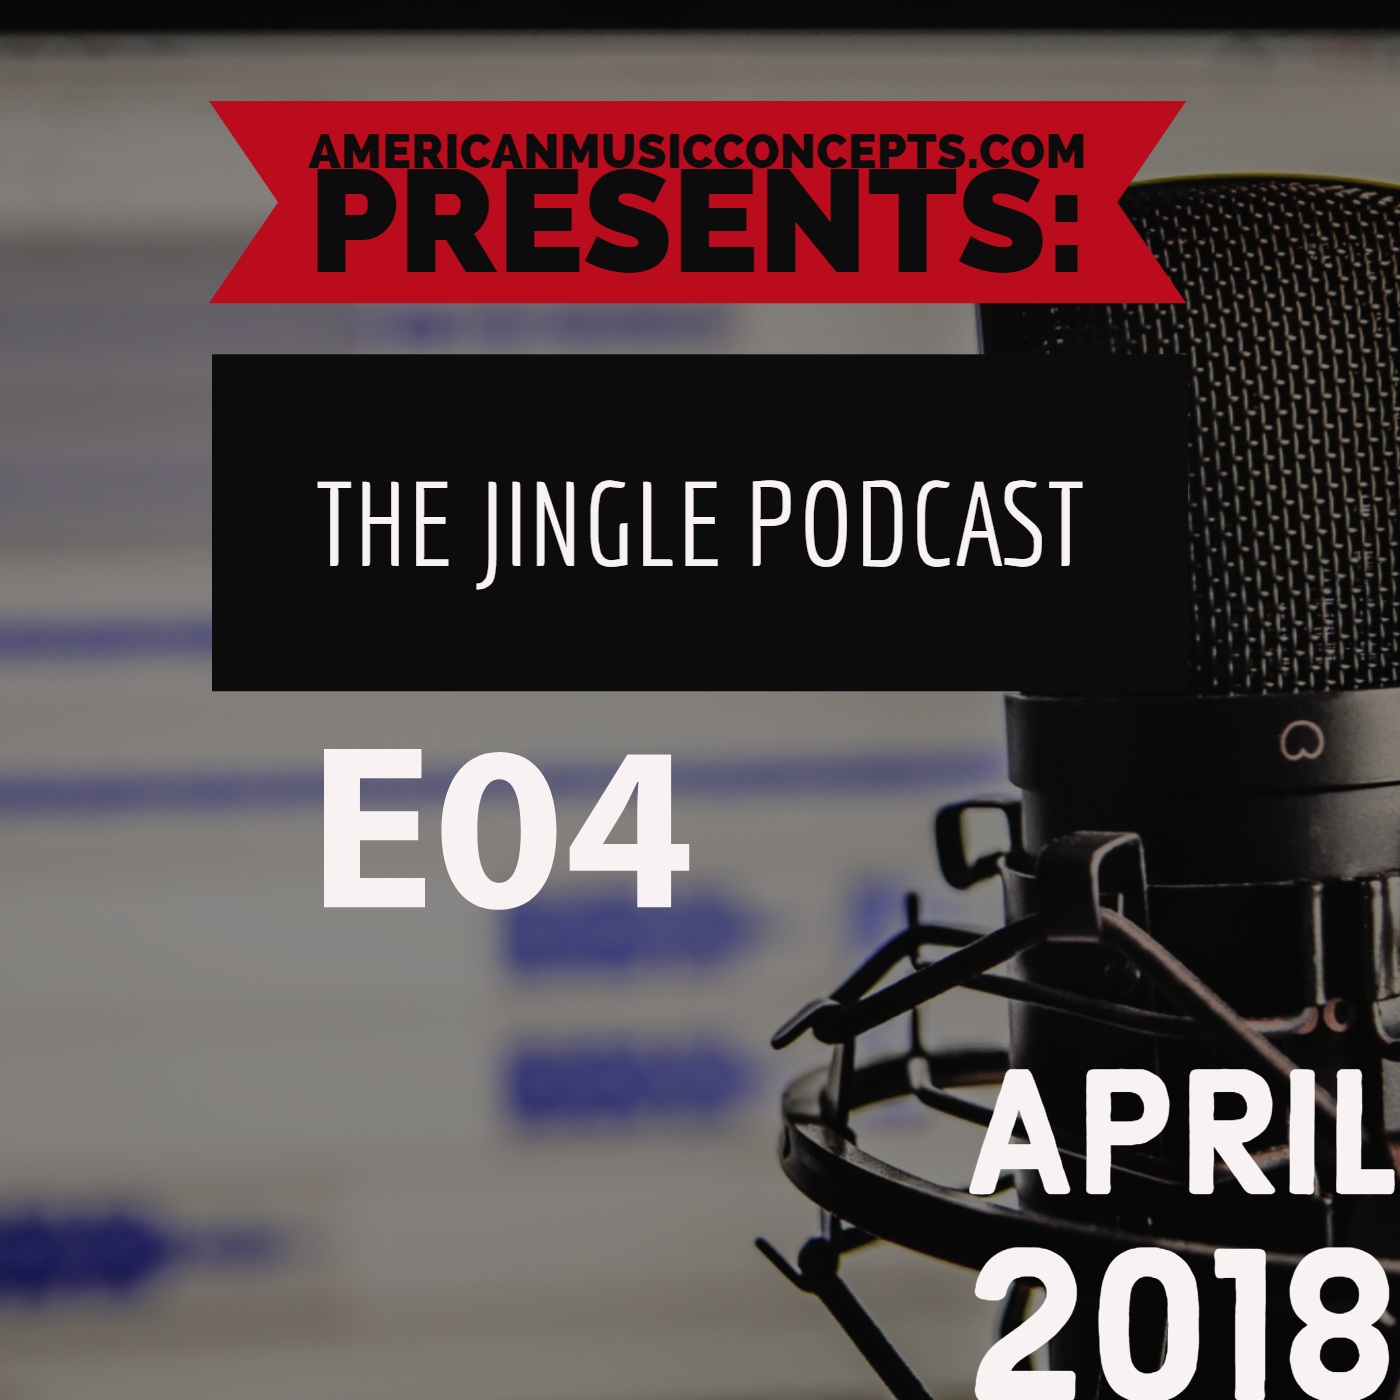 The Jingle Podcast - E04 - April 2018